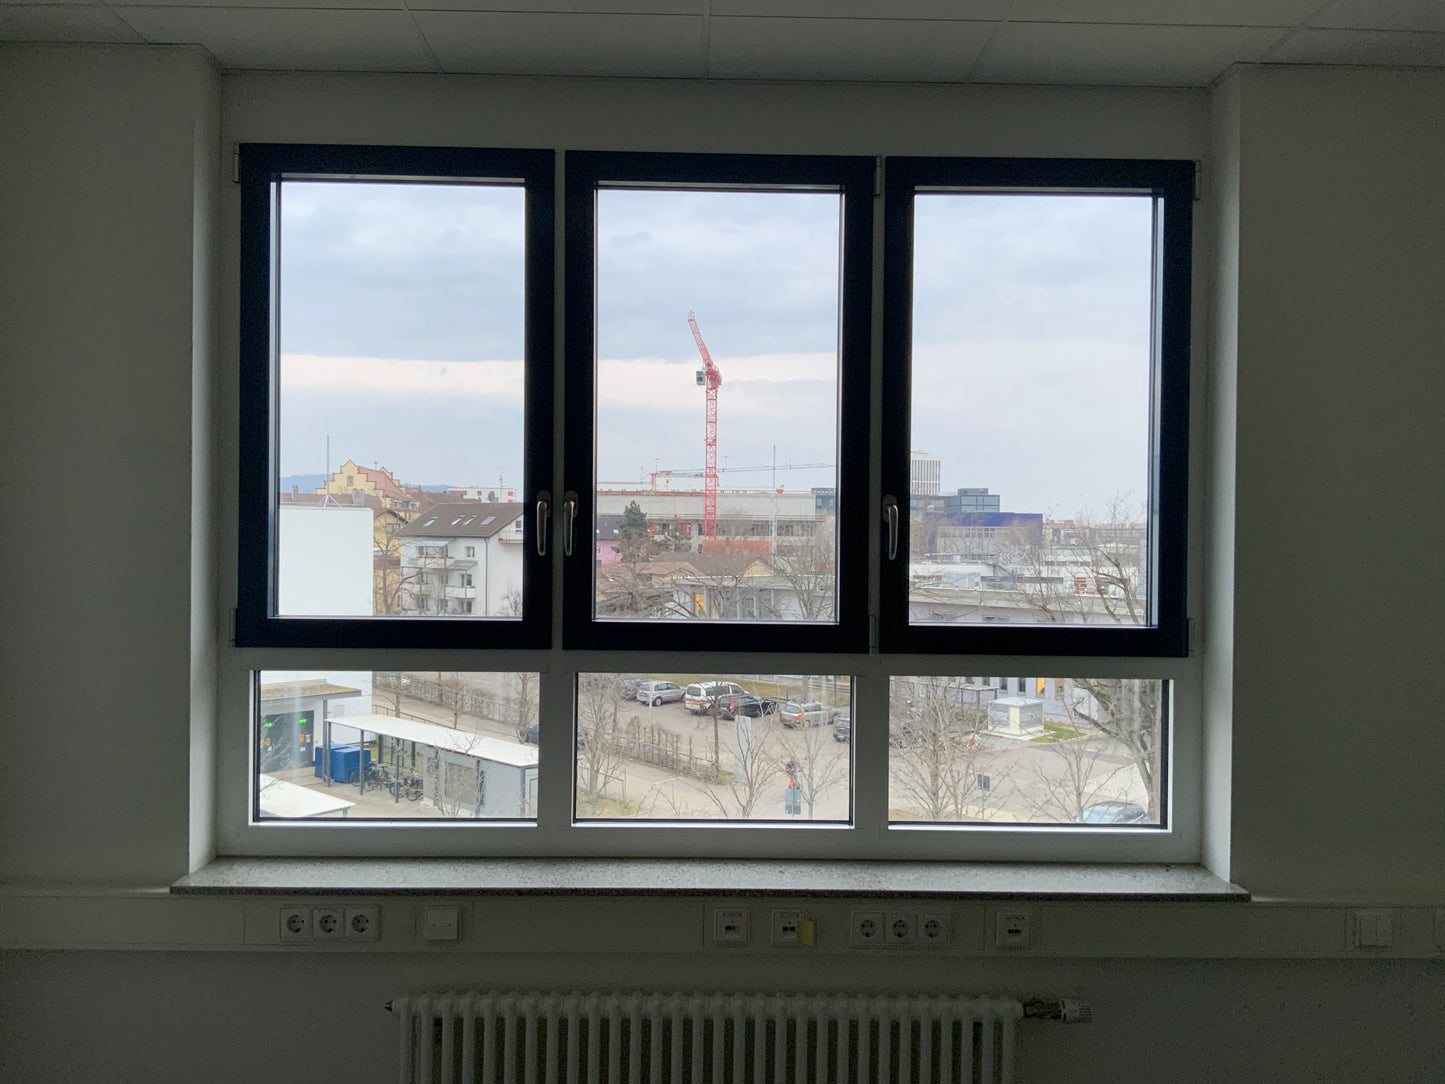 3-flügelige Fenster, außen Schüco International KG 2380x1910x80